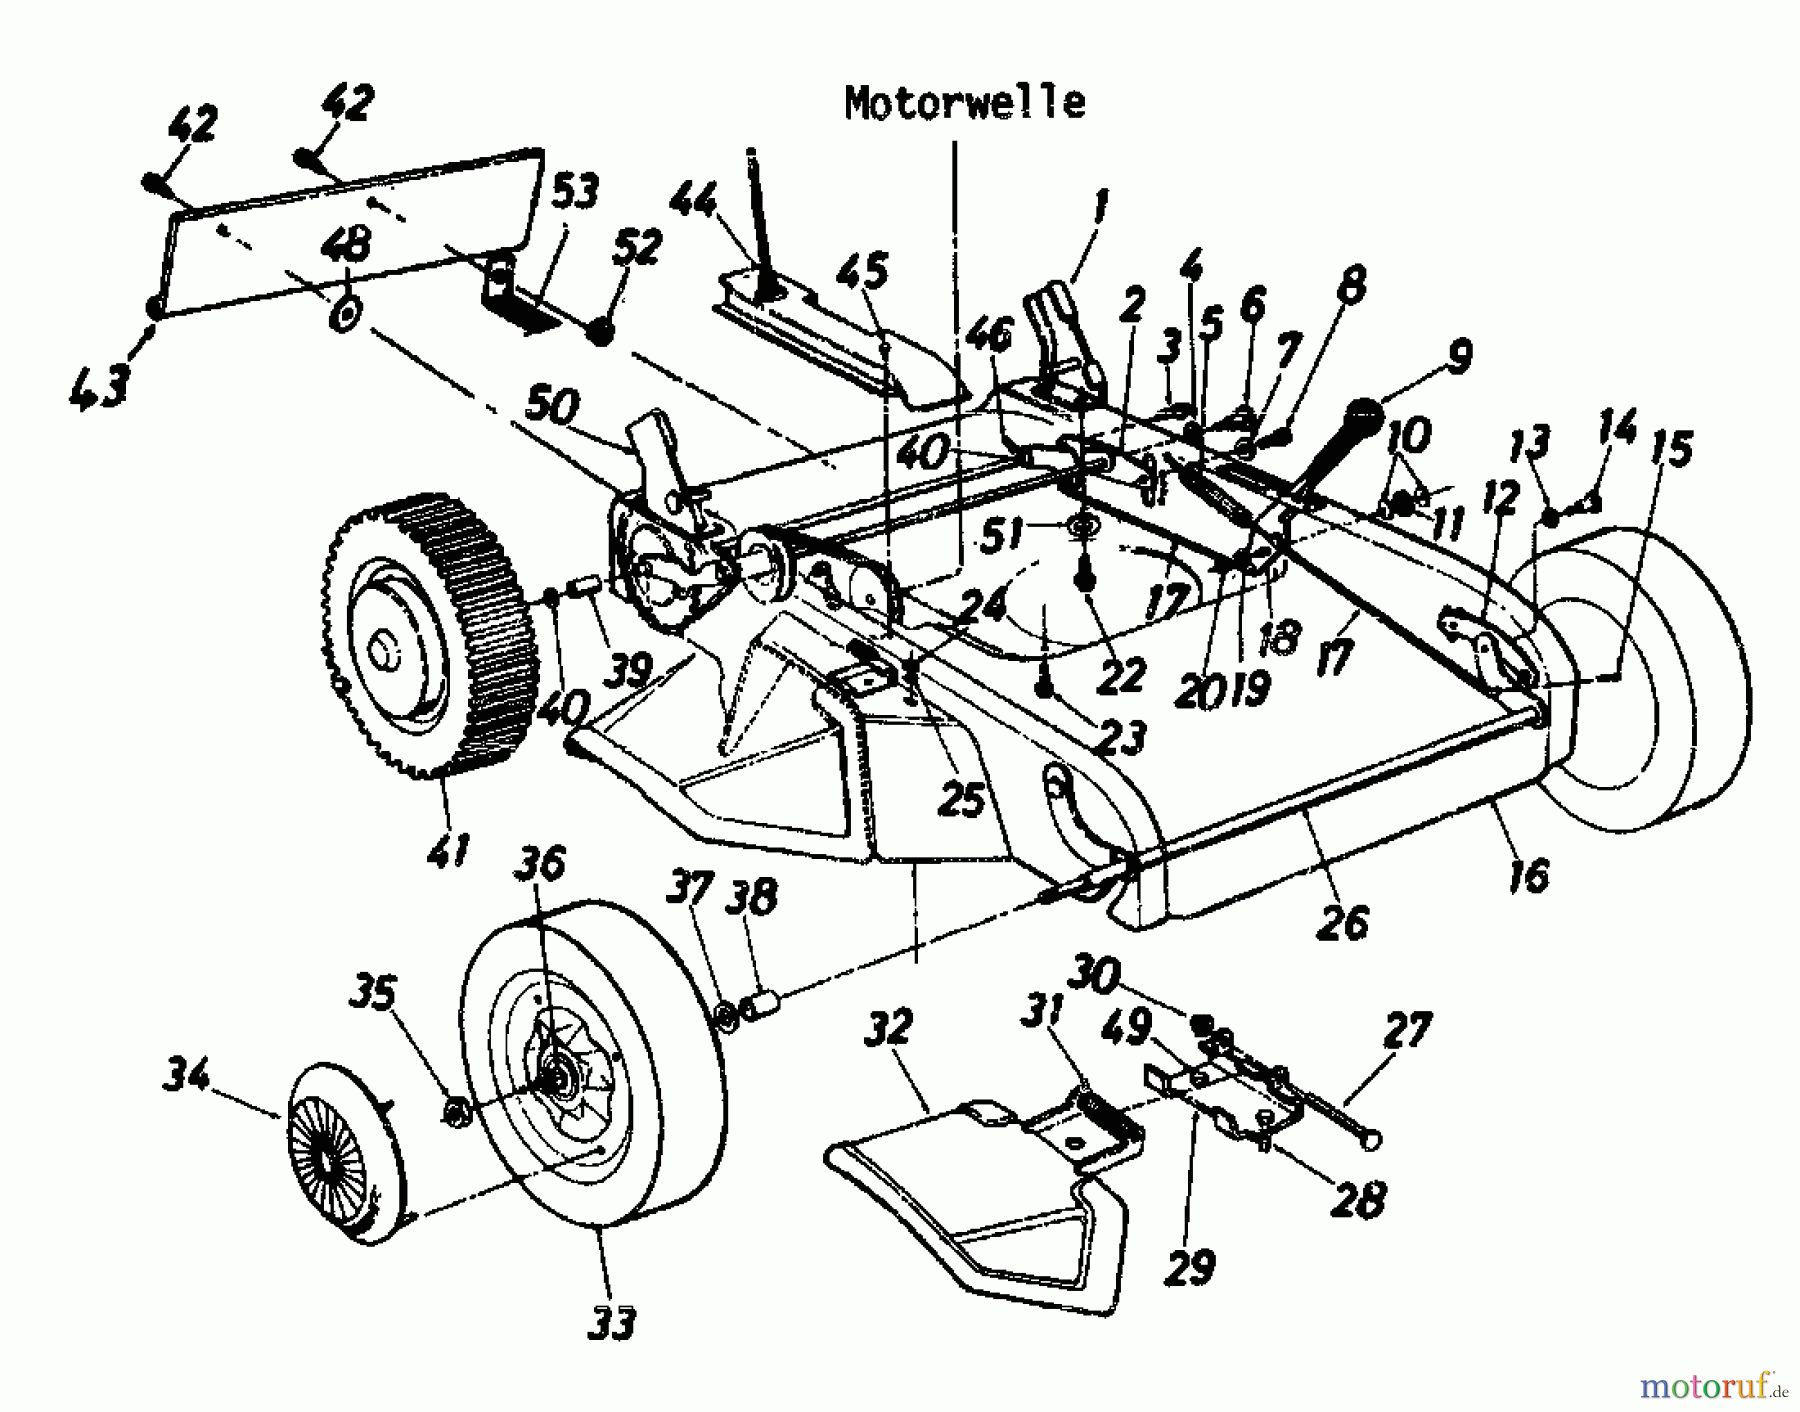  MTD Motormäher mit Antrieb DELUXE 53 S 125-2990  (1985) Grundgerät